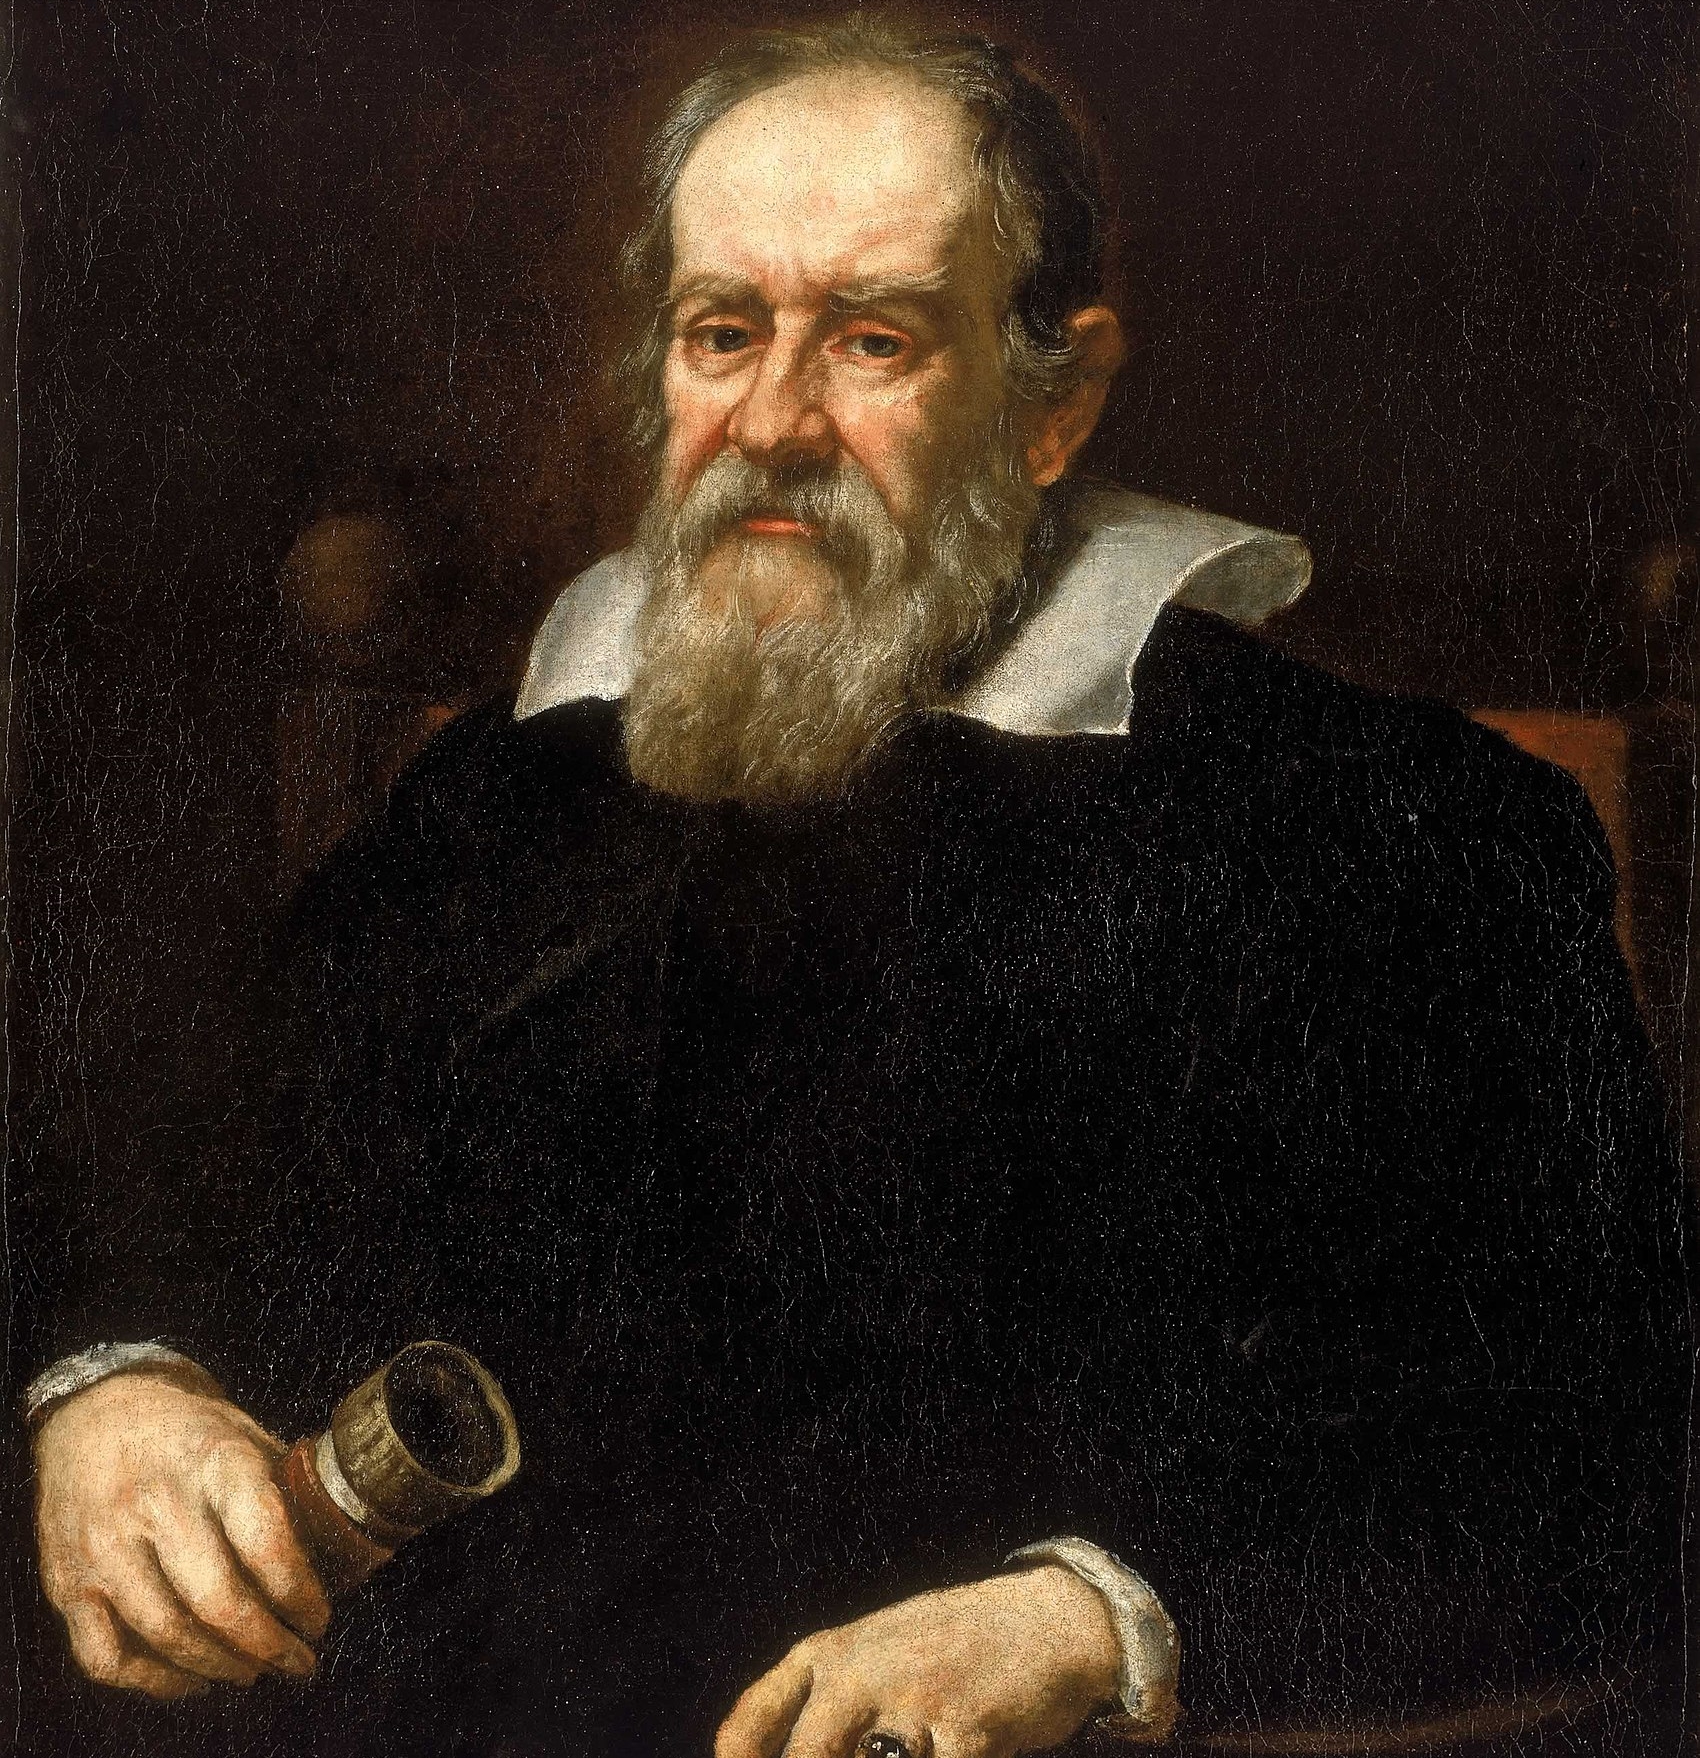 Unele dintre cele mai importante descoperiri ale lui Galileo Galilei